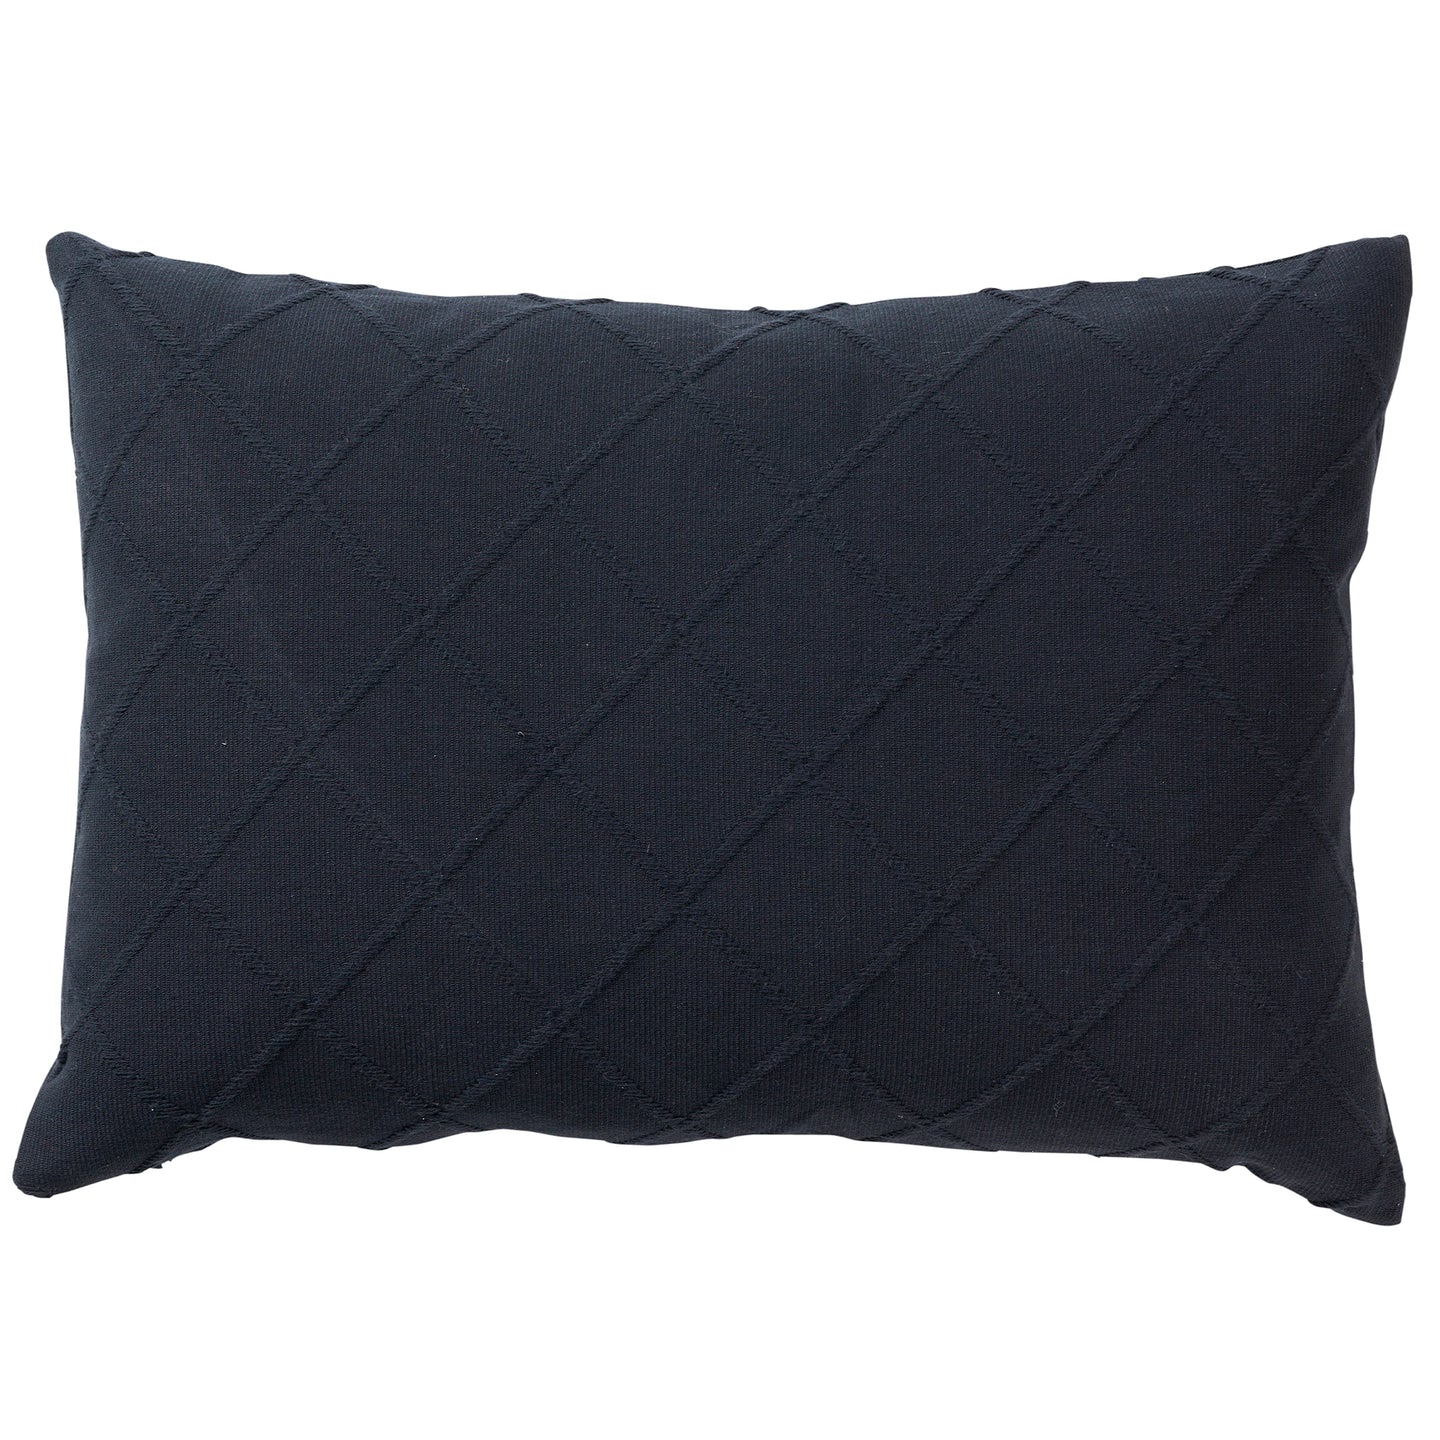 Criss Black Cotton Cushion Cover